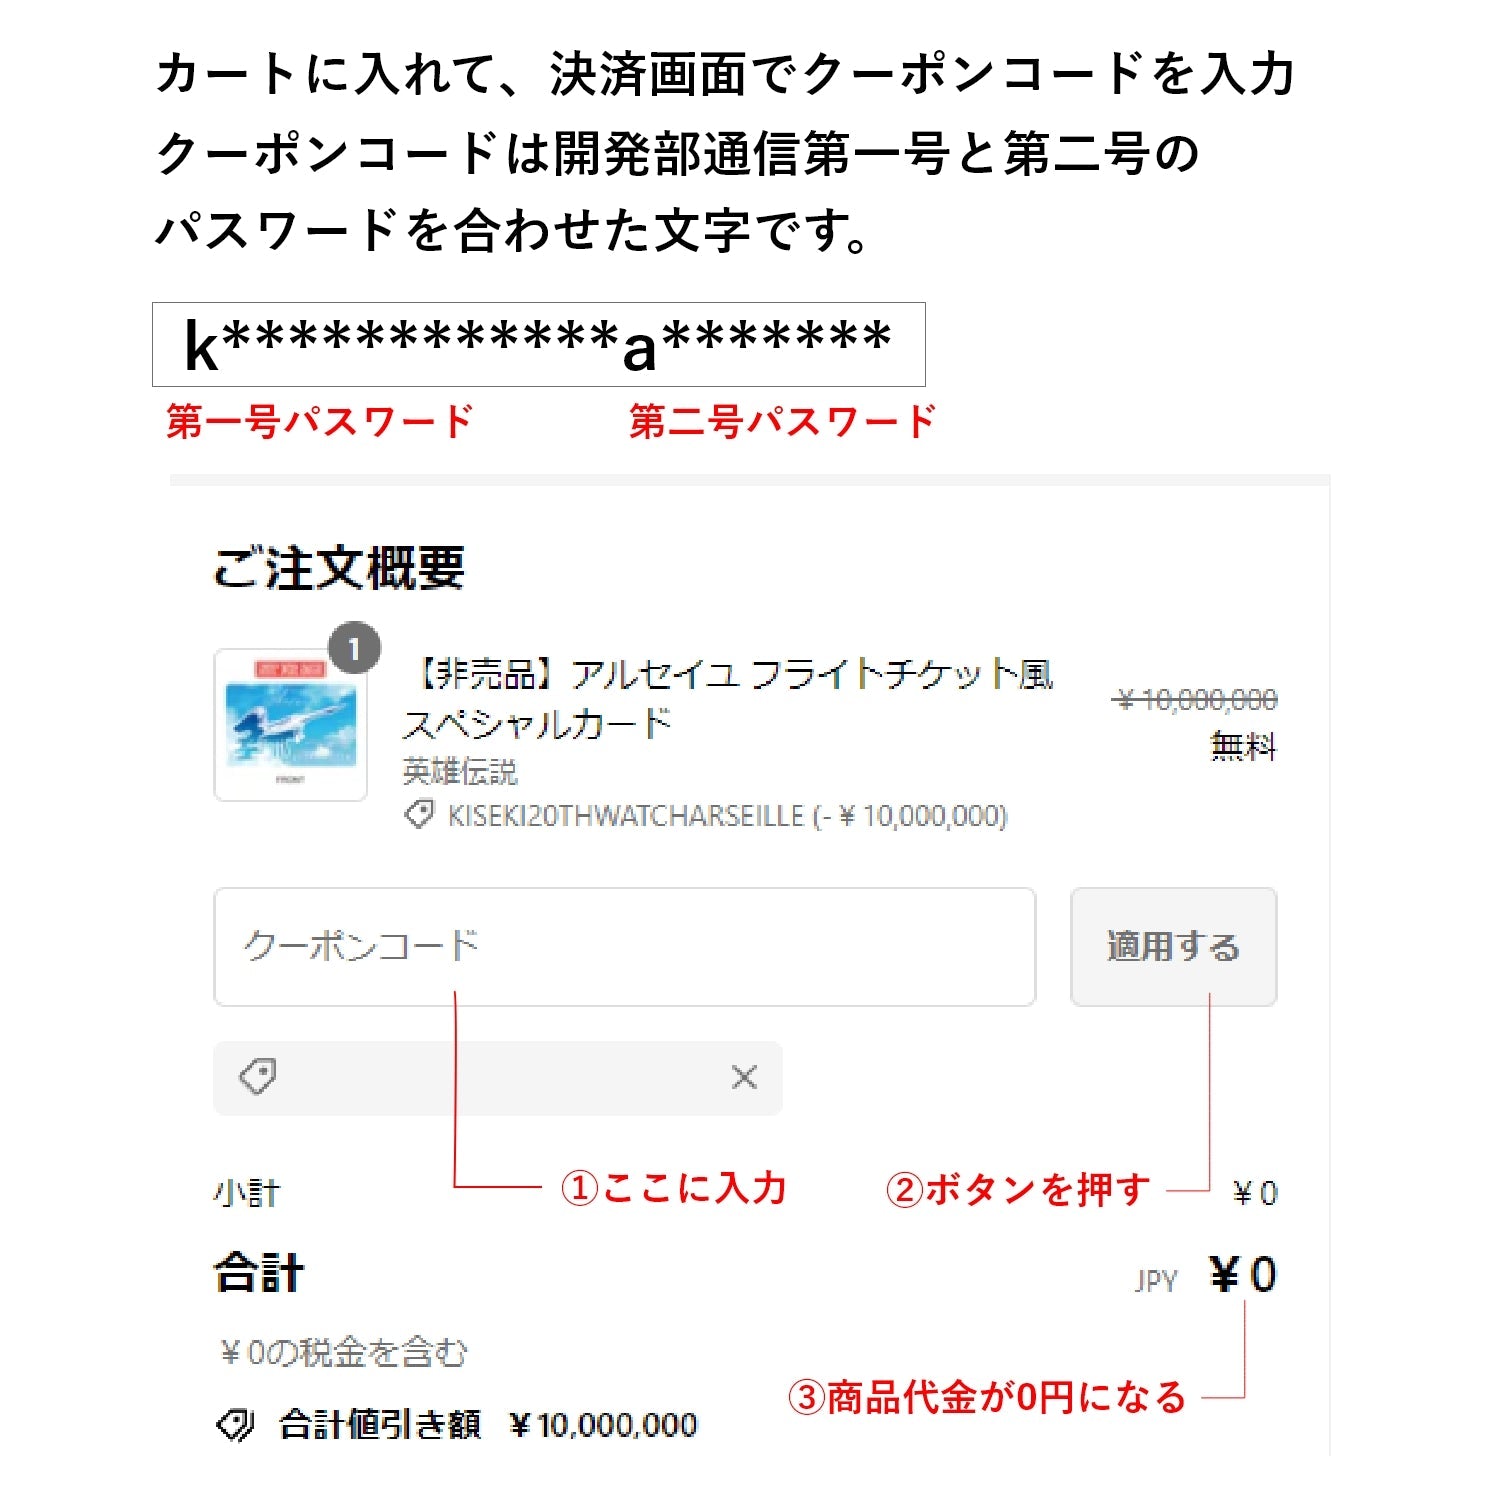 【非売品】アルセイユ フライトチケット風スペシャルカード - 公式通販サイト「アニメコレクション/Anime Collection」